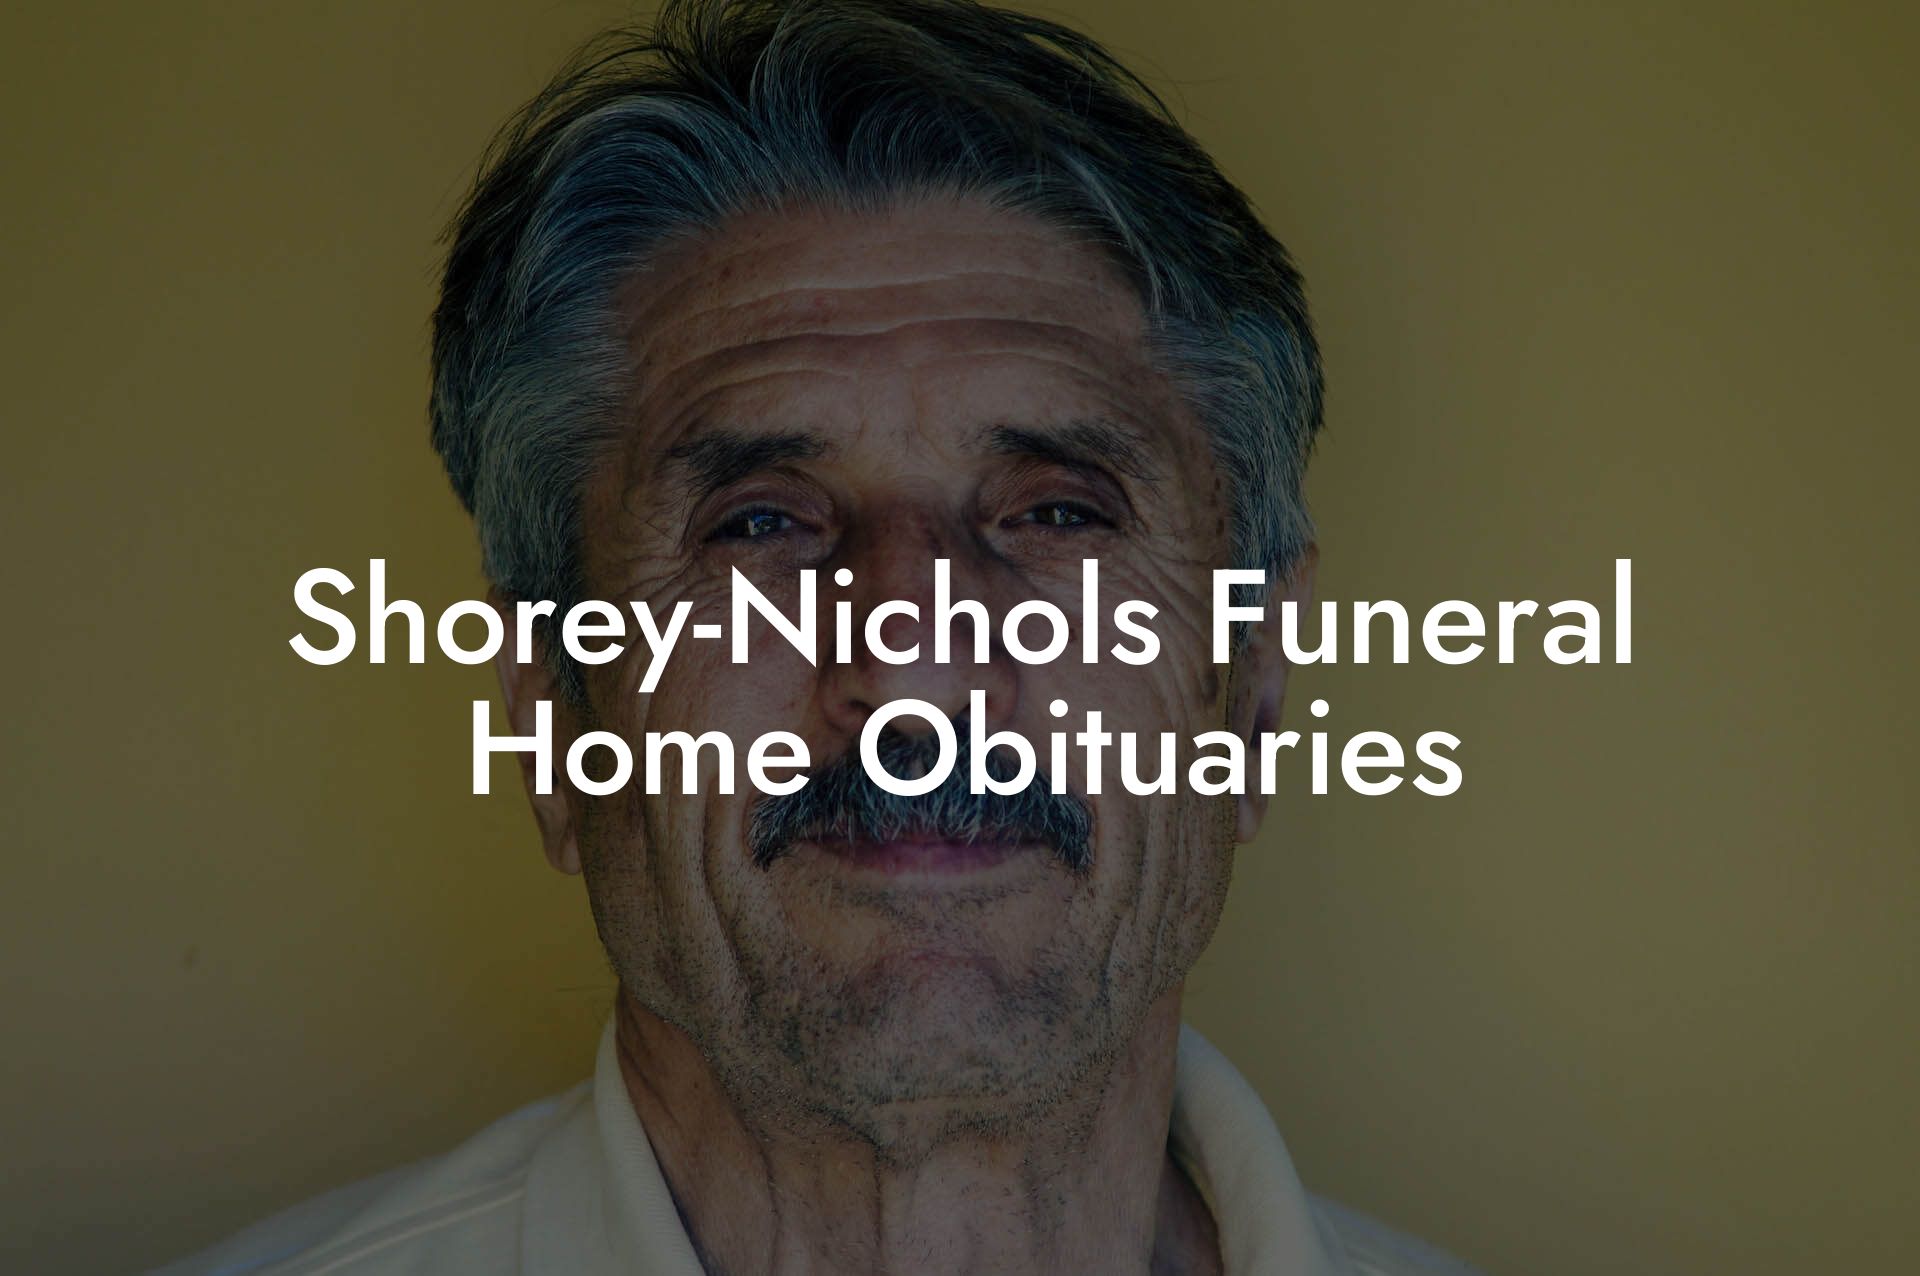 Shorey-Nichols Funeral Home Obituaries